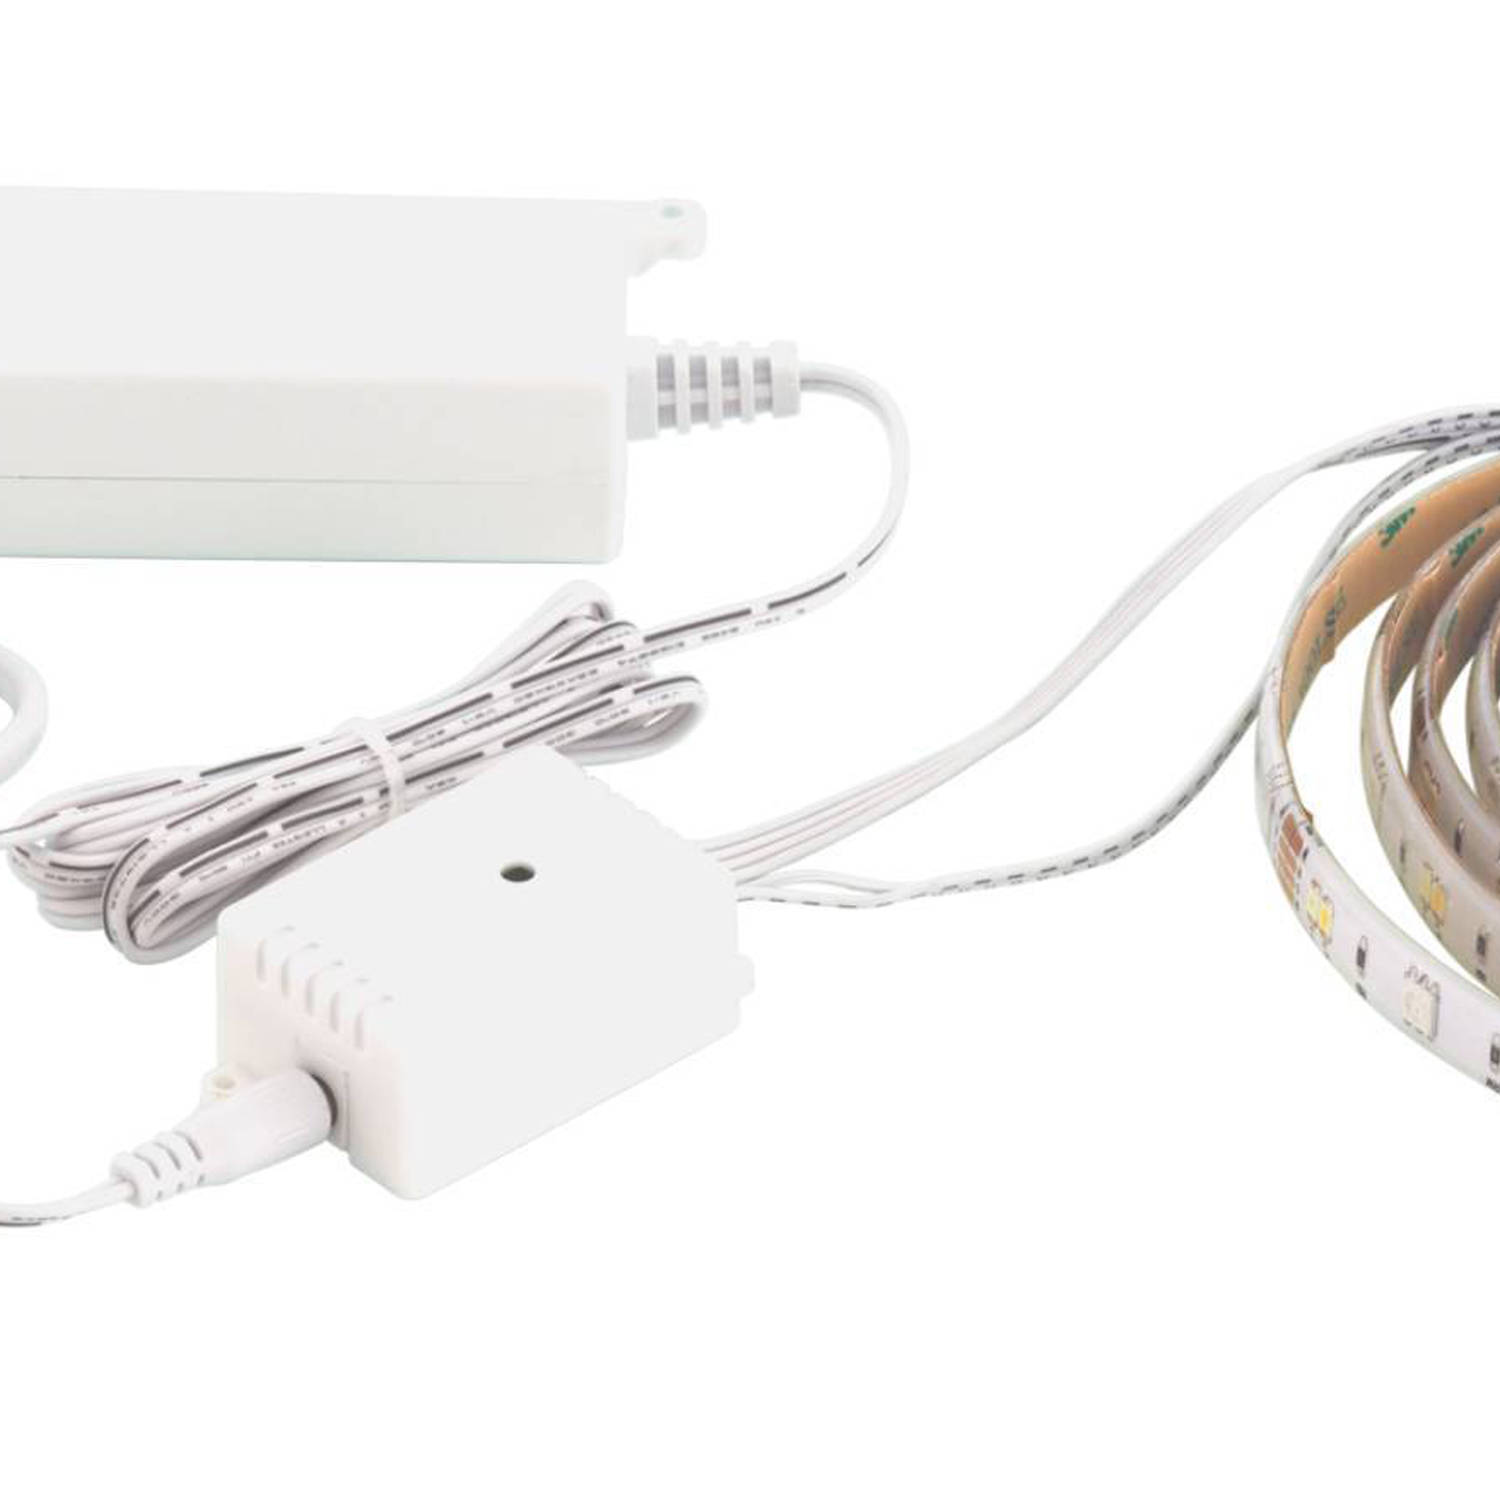 EGLO connect.z Smart LED Strip - 800 cm - Wit - Instelbaar RGB & wit licht  - Dimbaar - Zigbee | Blokker